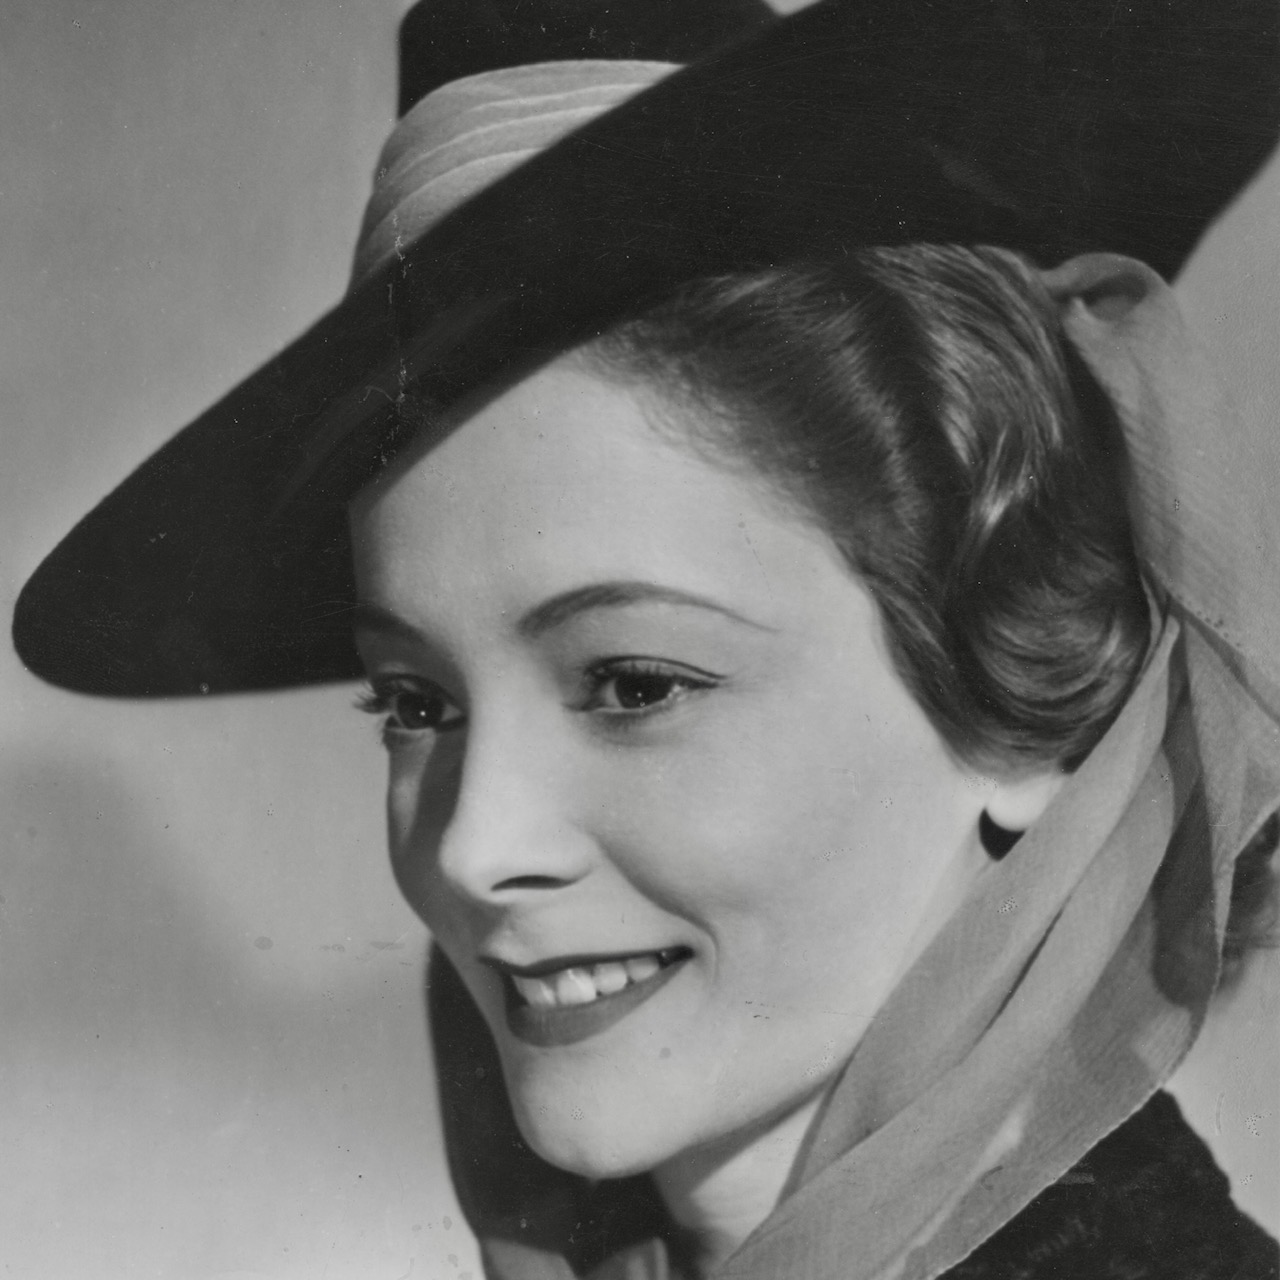 picture of Jill Furze taken at the Ealing Studios in 1939 wearing a hat